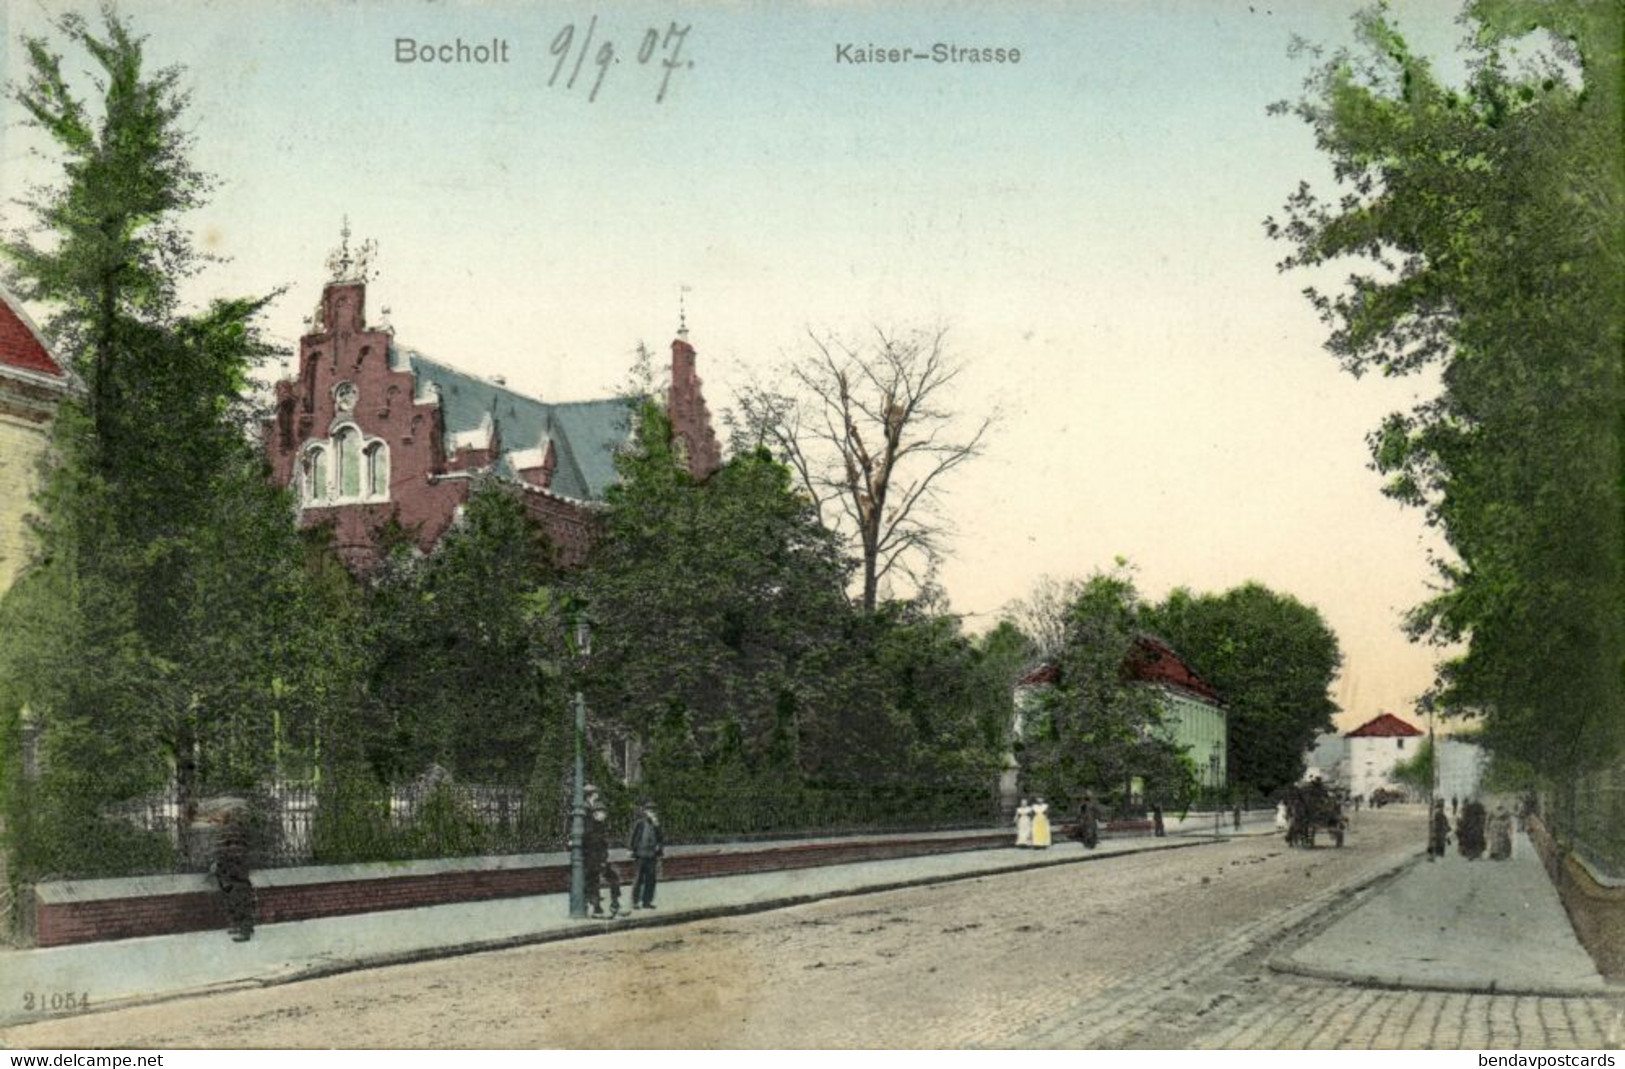 BOCHOLT I. W., Kaiser-Strasse (1907) AK - Bocholt